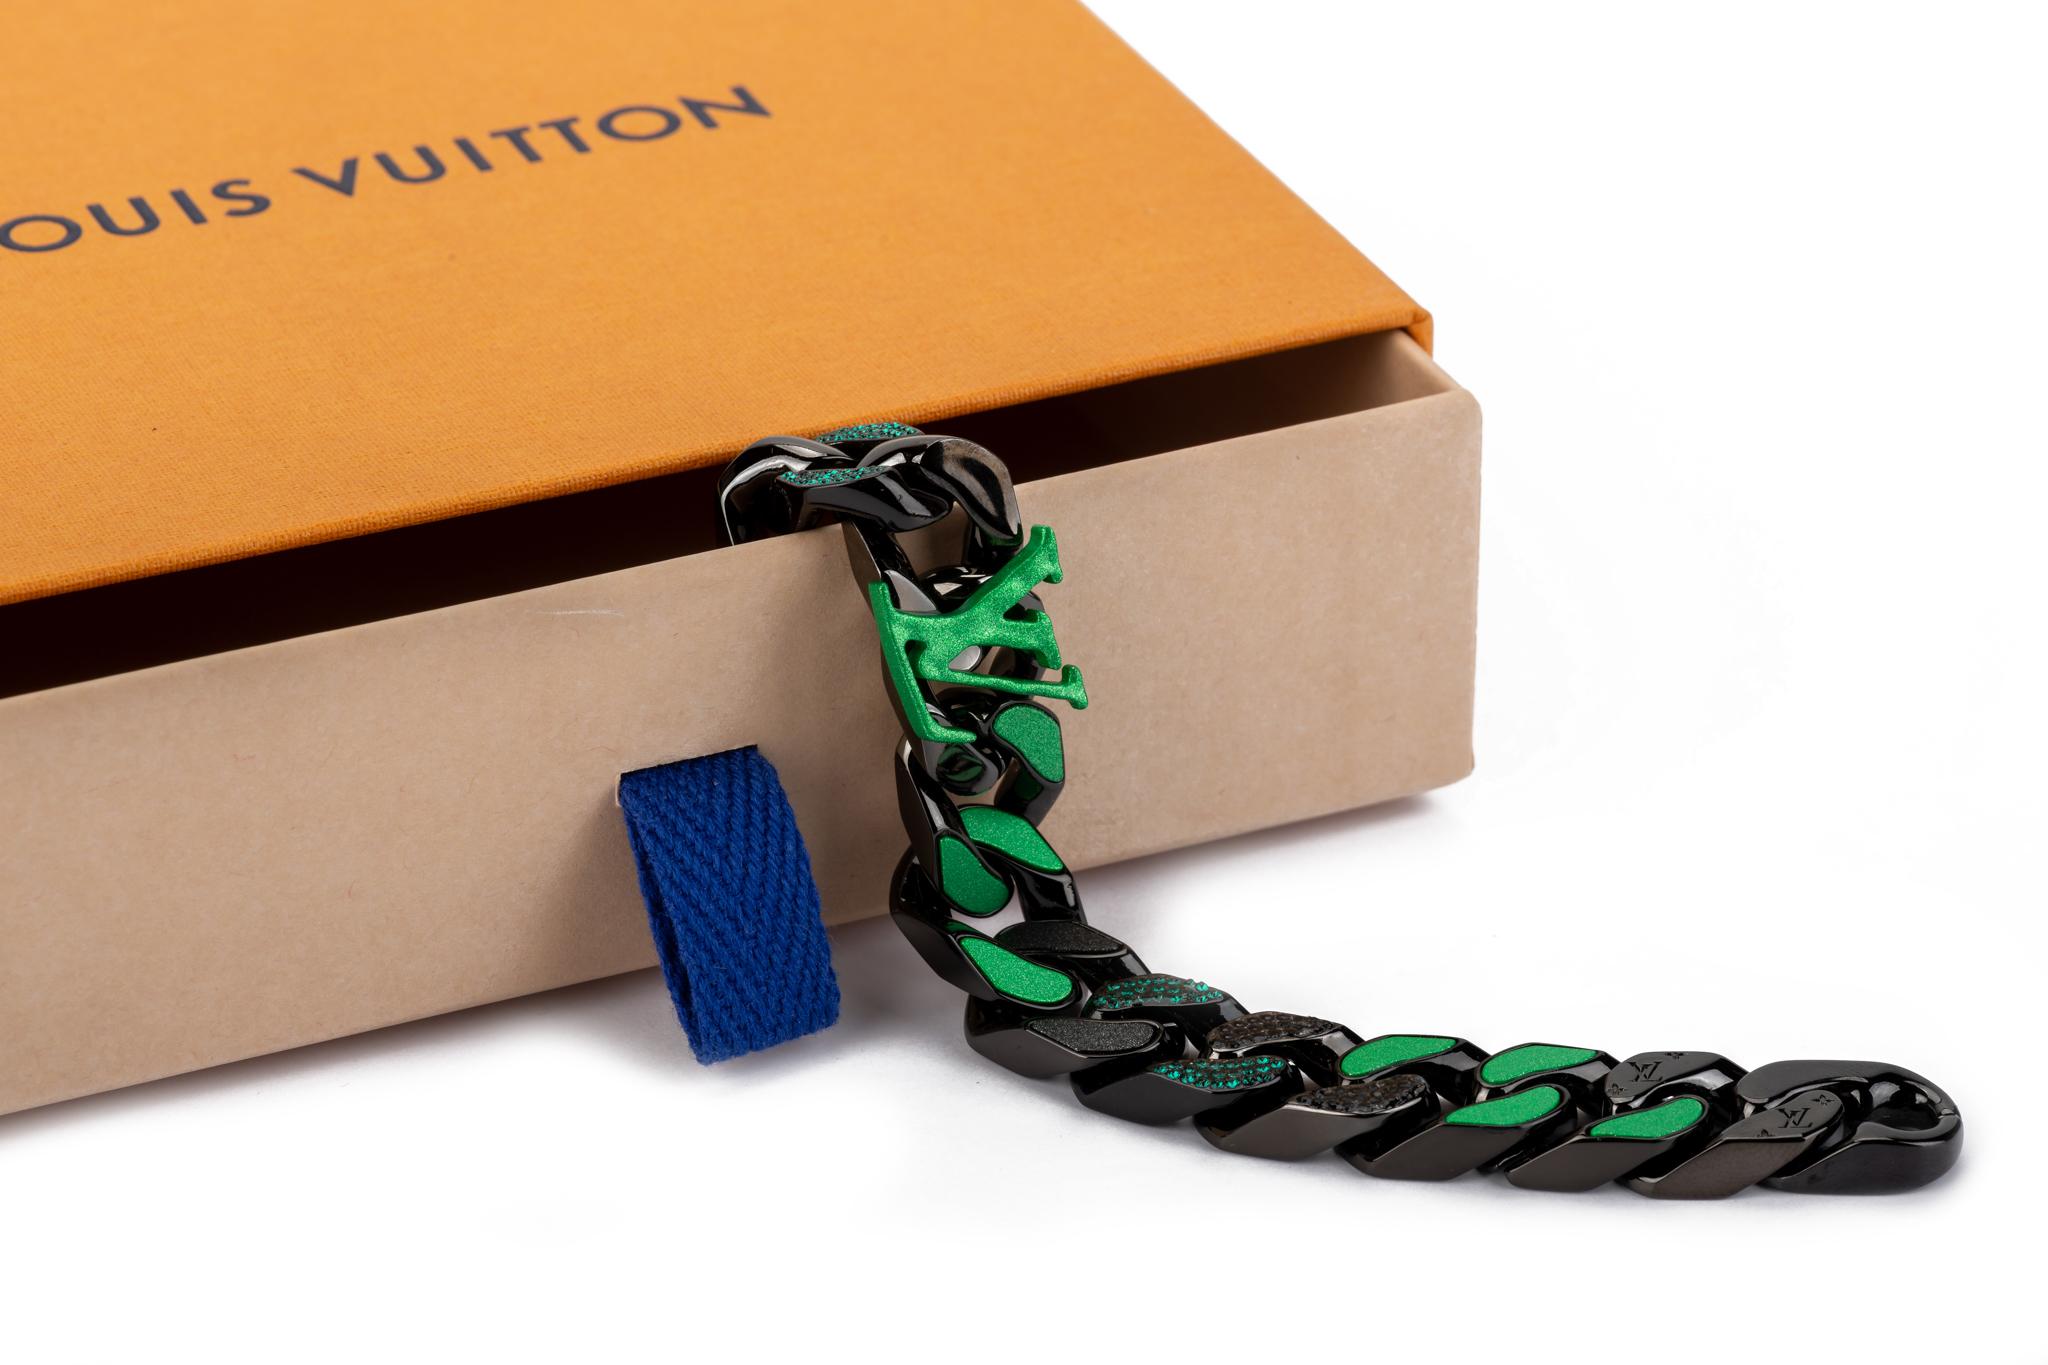 Virgil Abloh Designs Louis Vuitton Bracelets for Charity